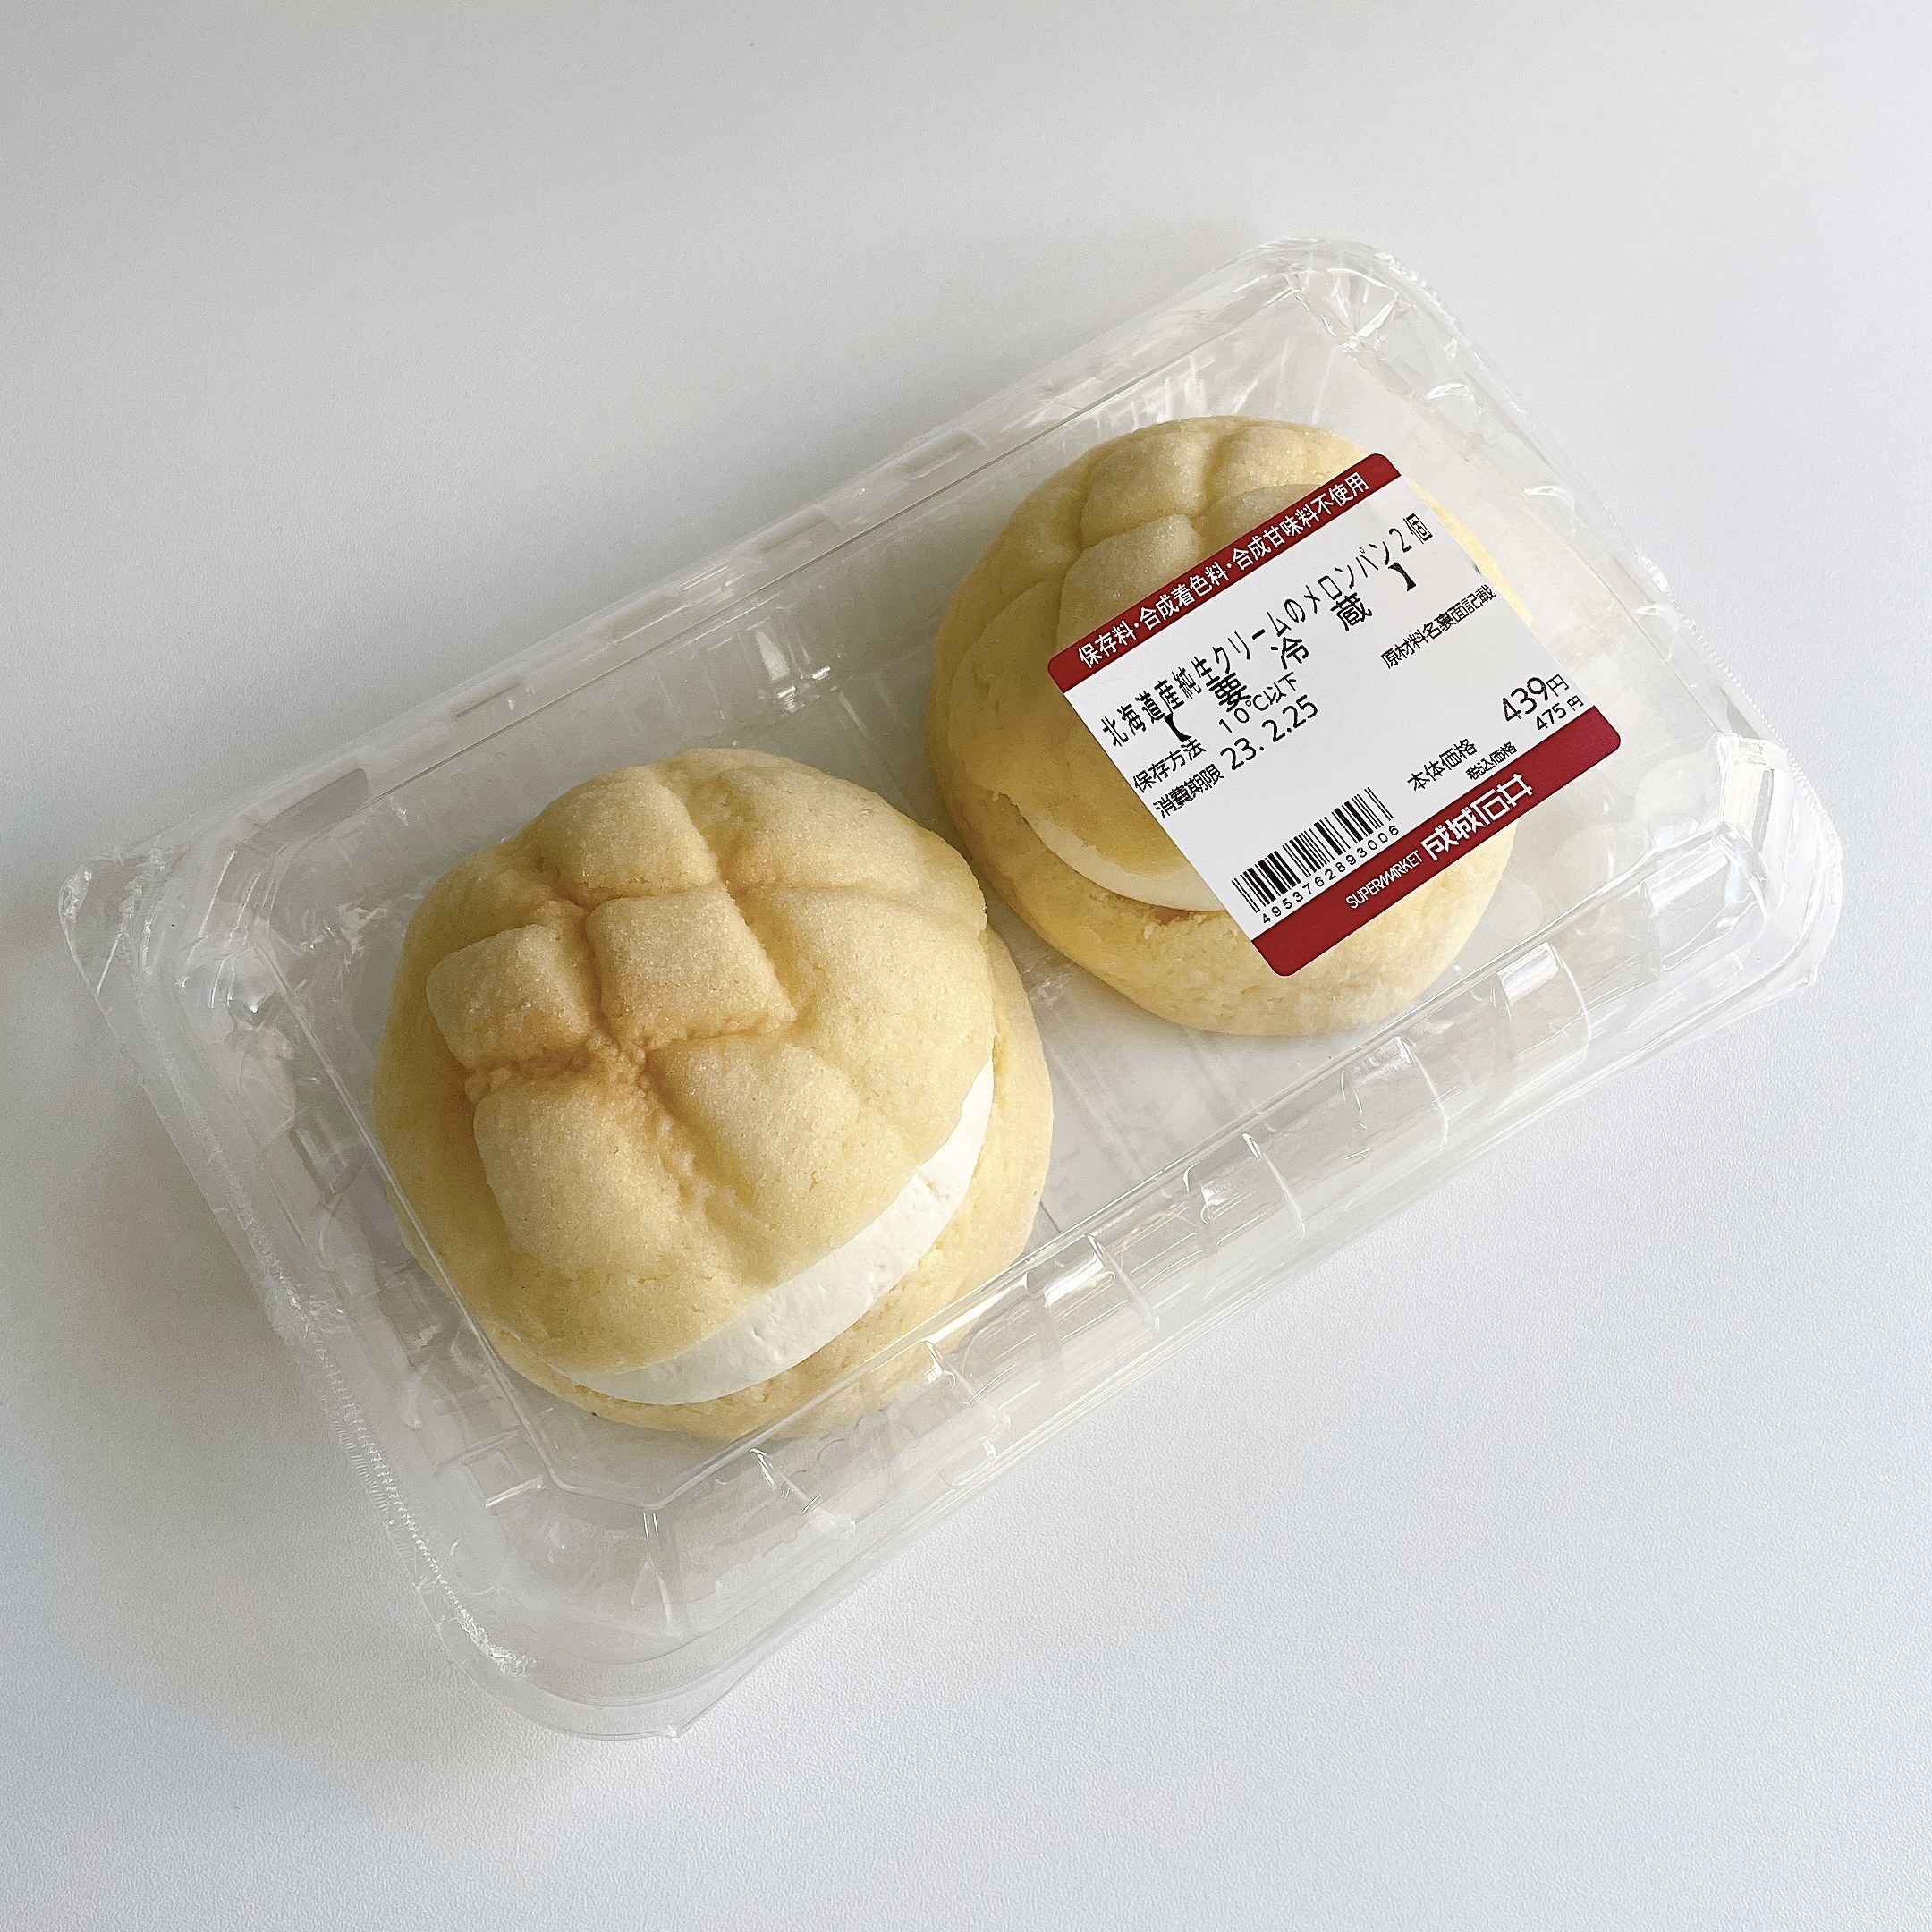 成城石井のおすすめのスイーツ「北海道産純生クリームのメロンパン 2個」